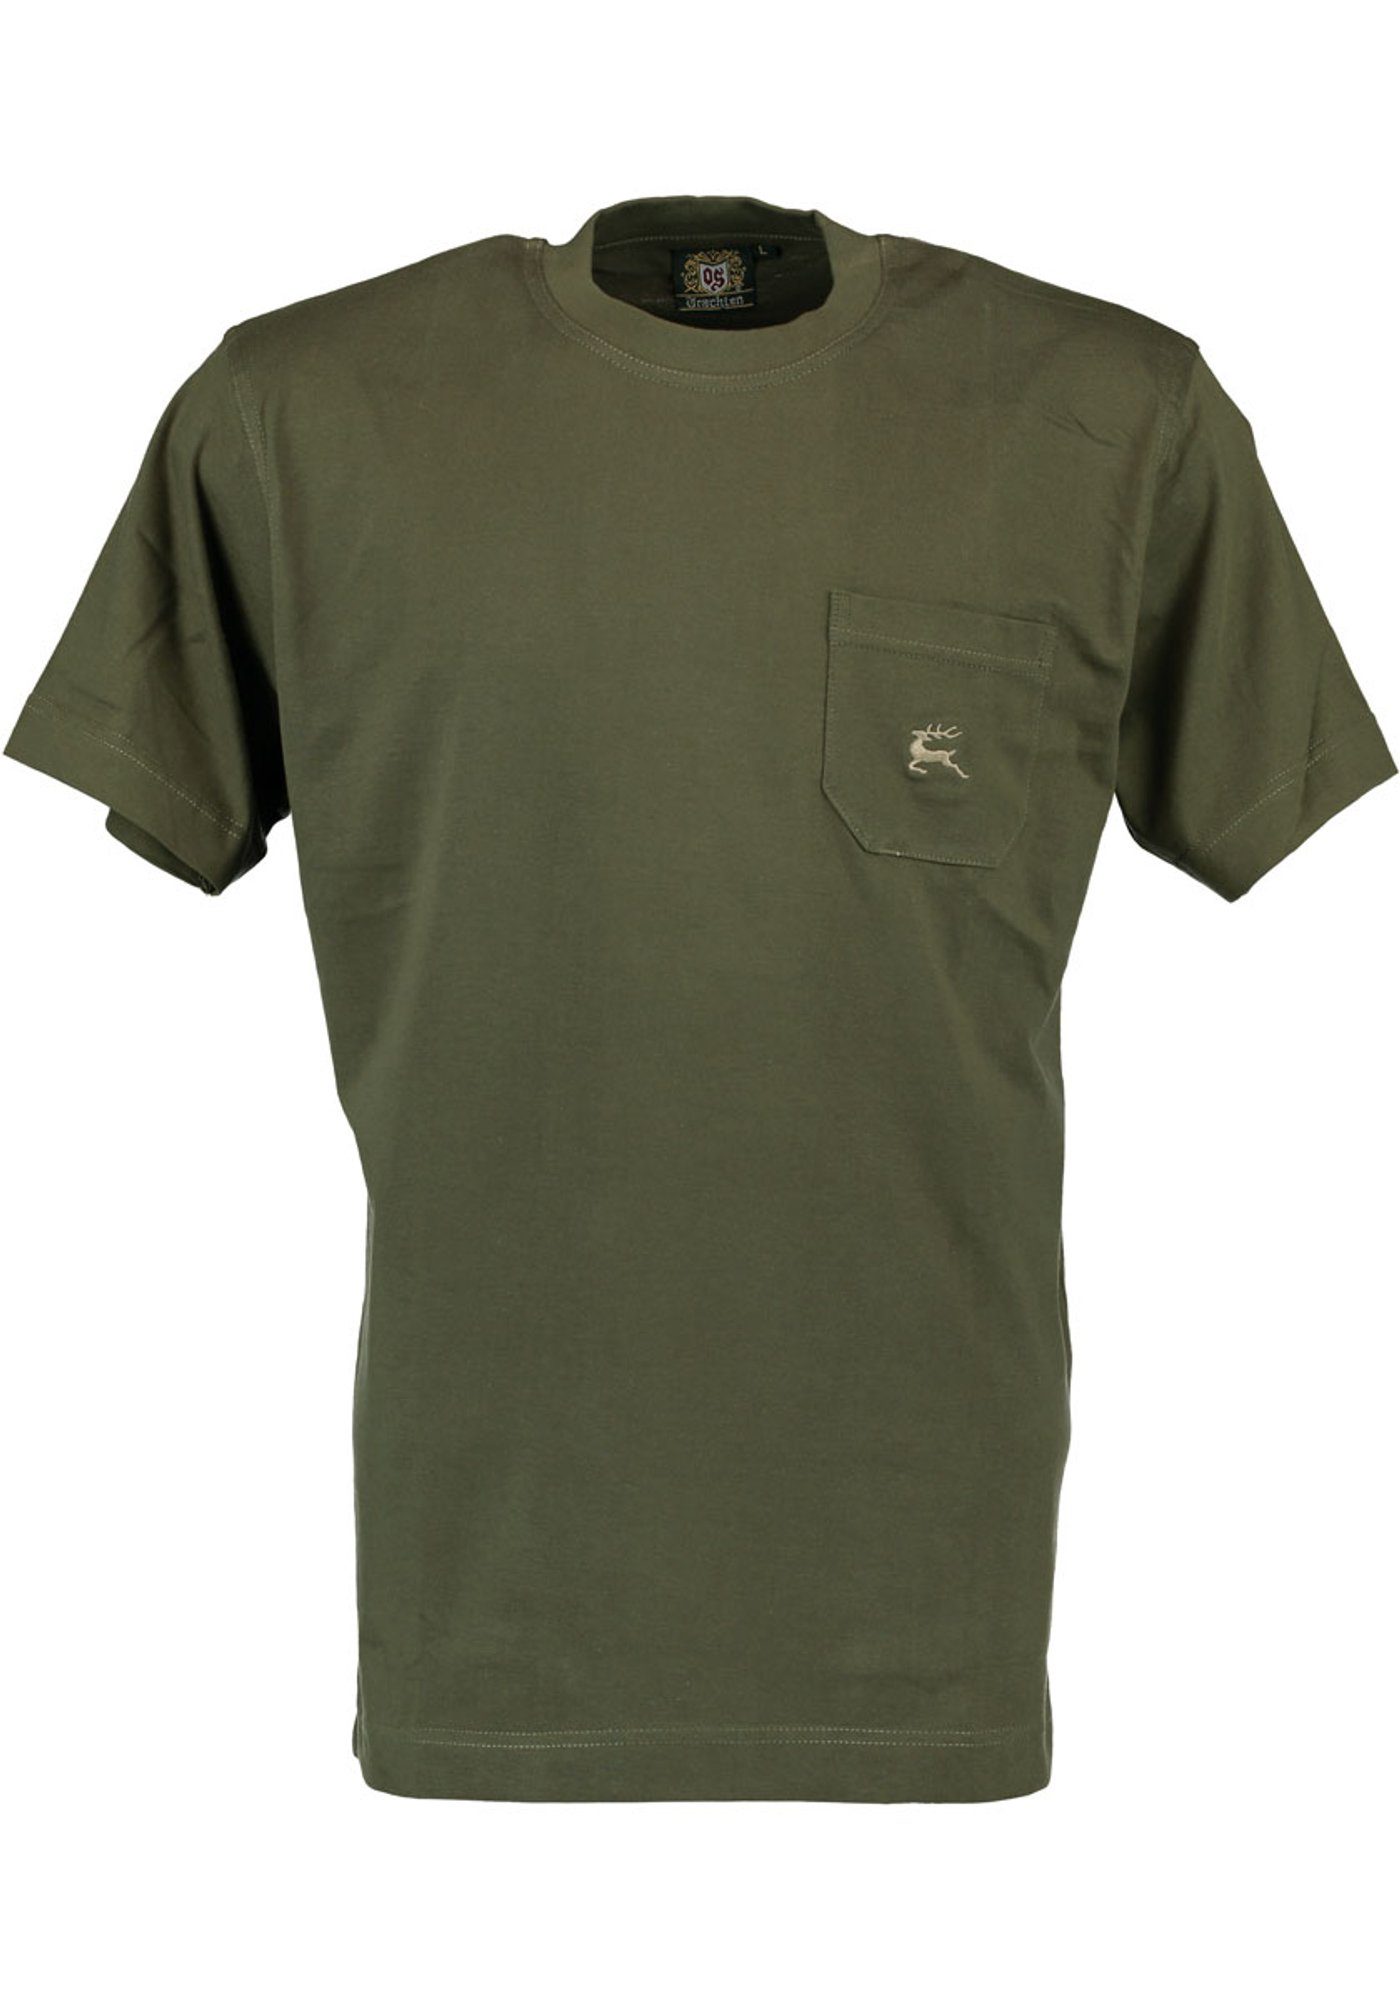 Hirsch-Stickerei OS-Trachten Brusttasche auf Najio T-Shirt oliv mit Kurzarmshirt Herren der